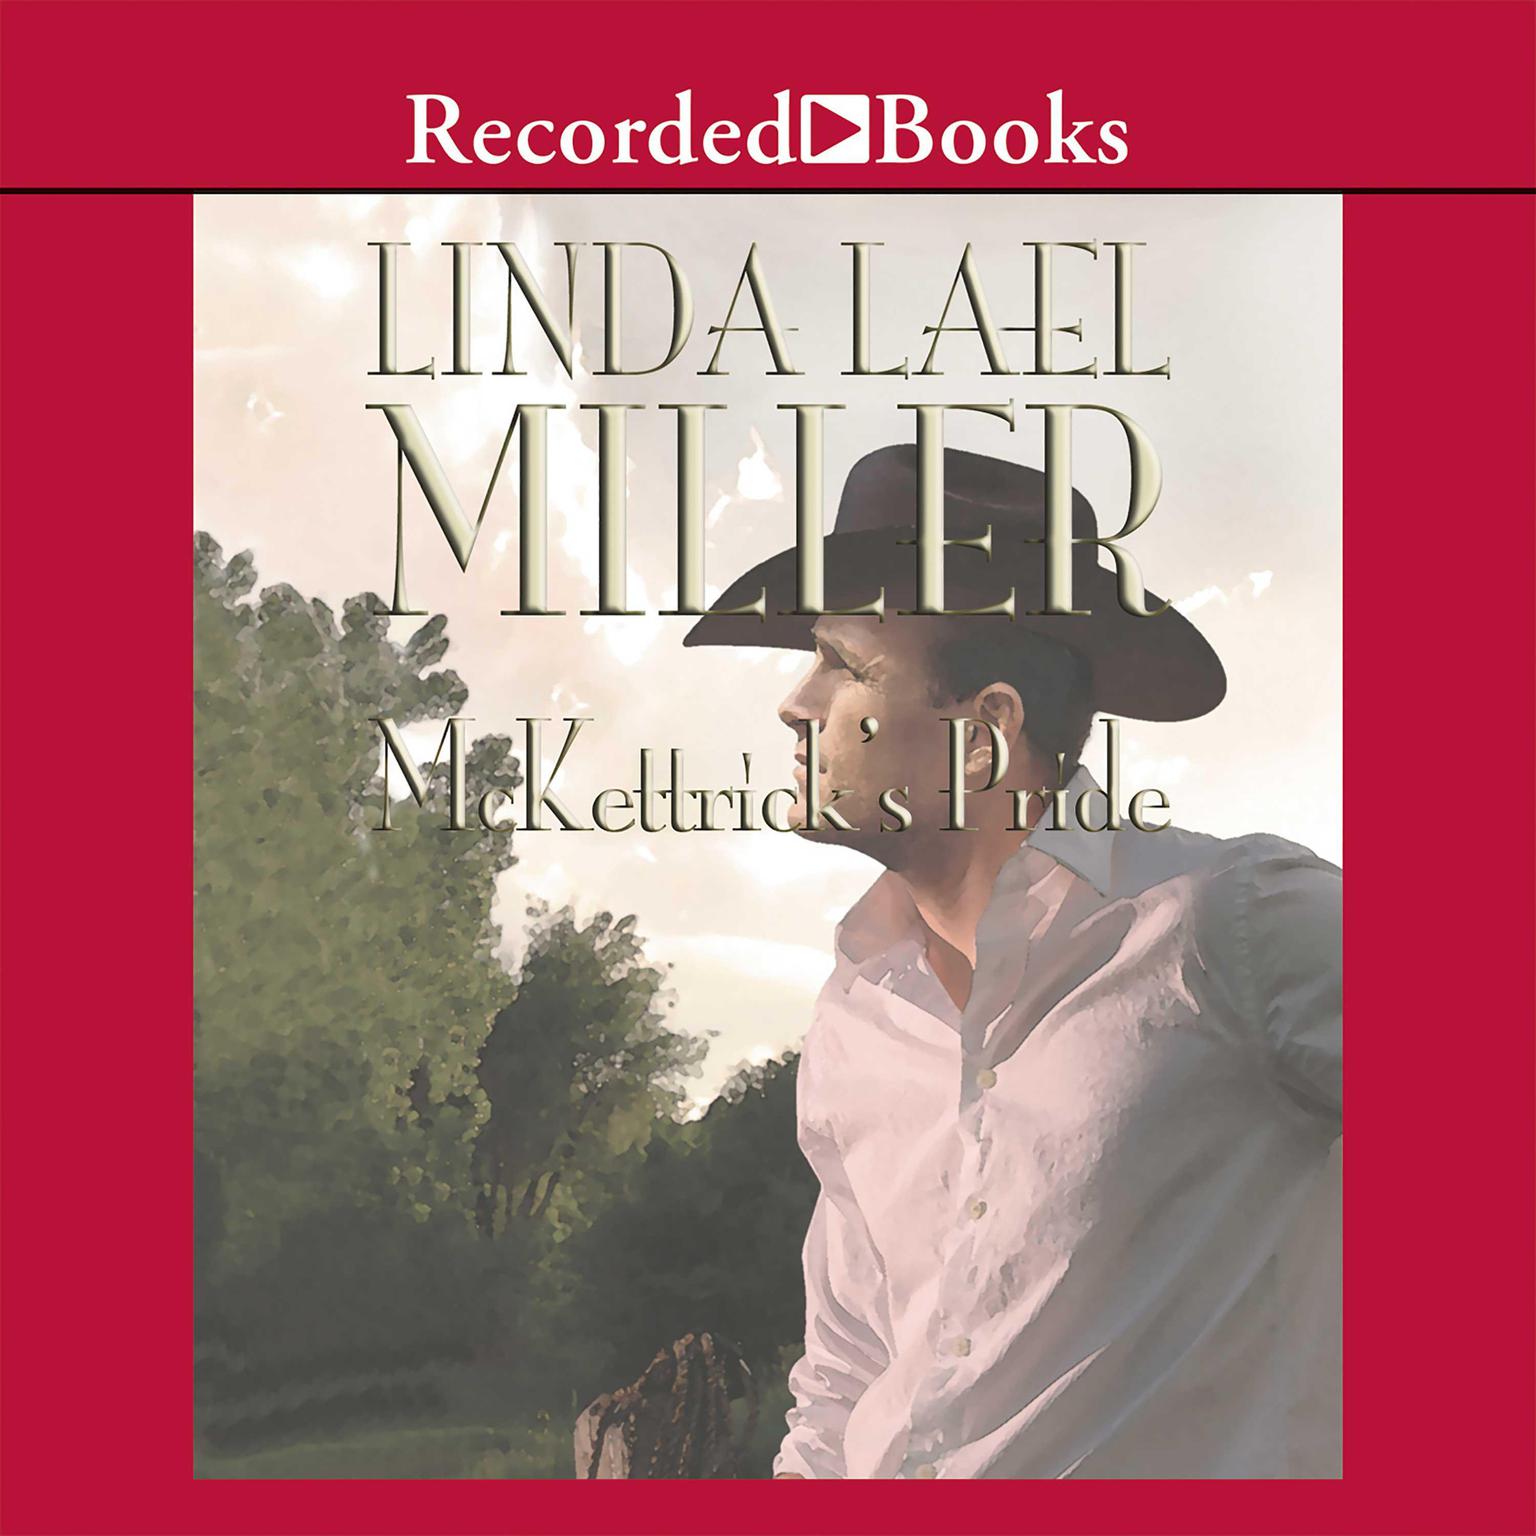 McKettricks Pride Audiobook, by Linda Lael Miller